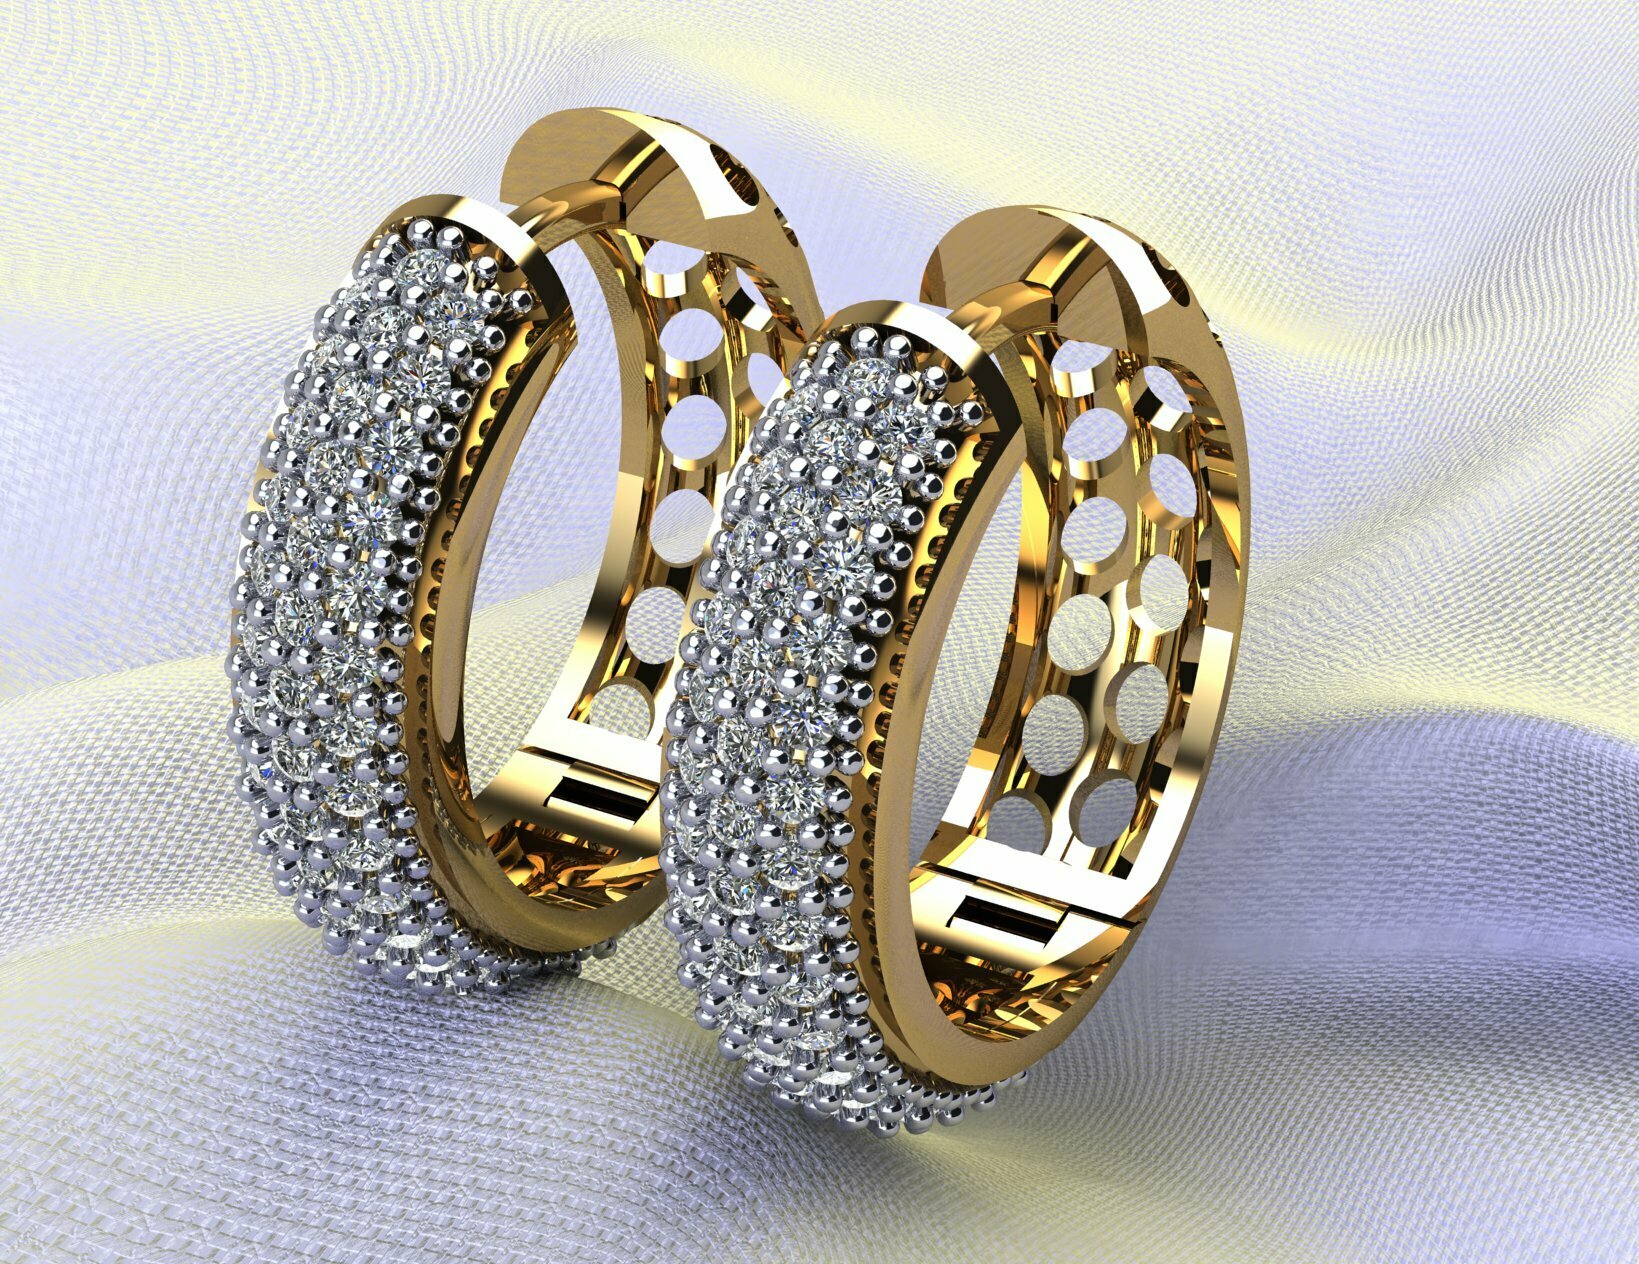 jewelry 3d models, jewelry stl files, 3d printed jewelry, jewelry 3d printing, 3d print jewelry